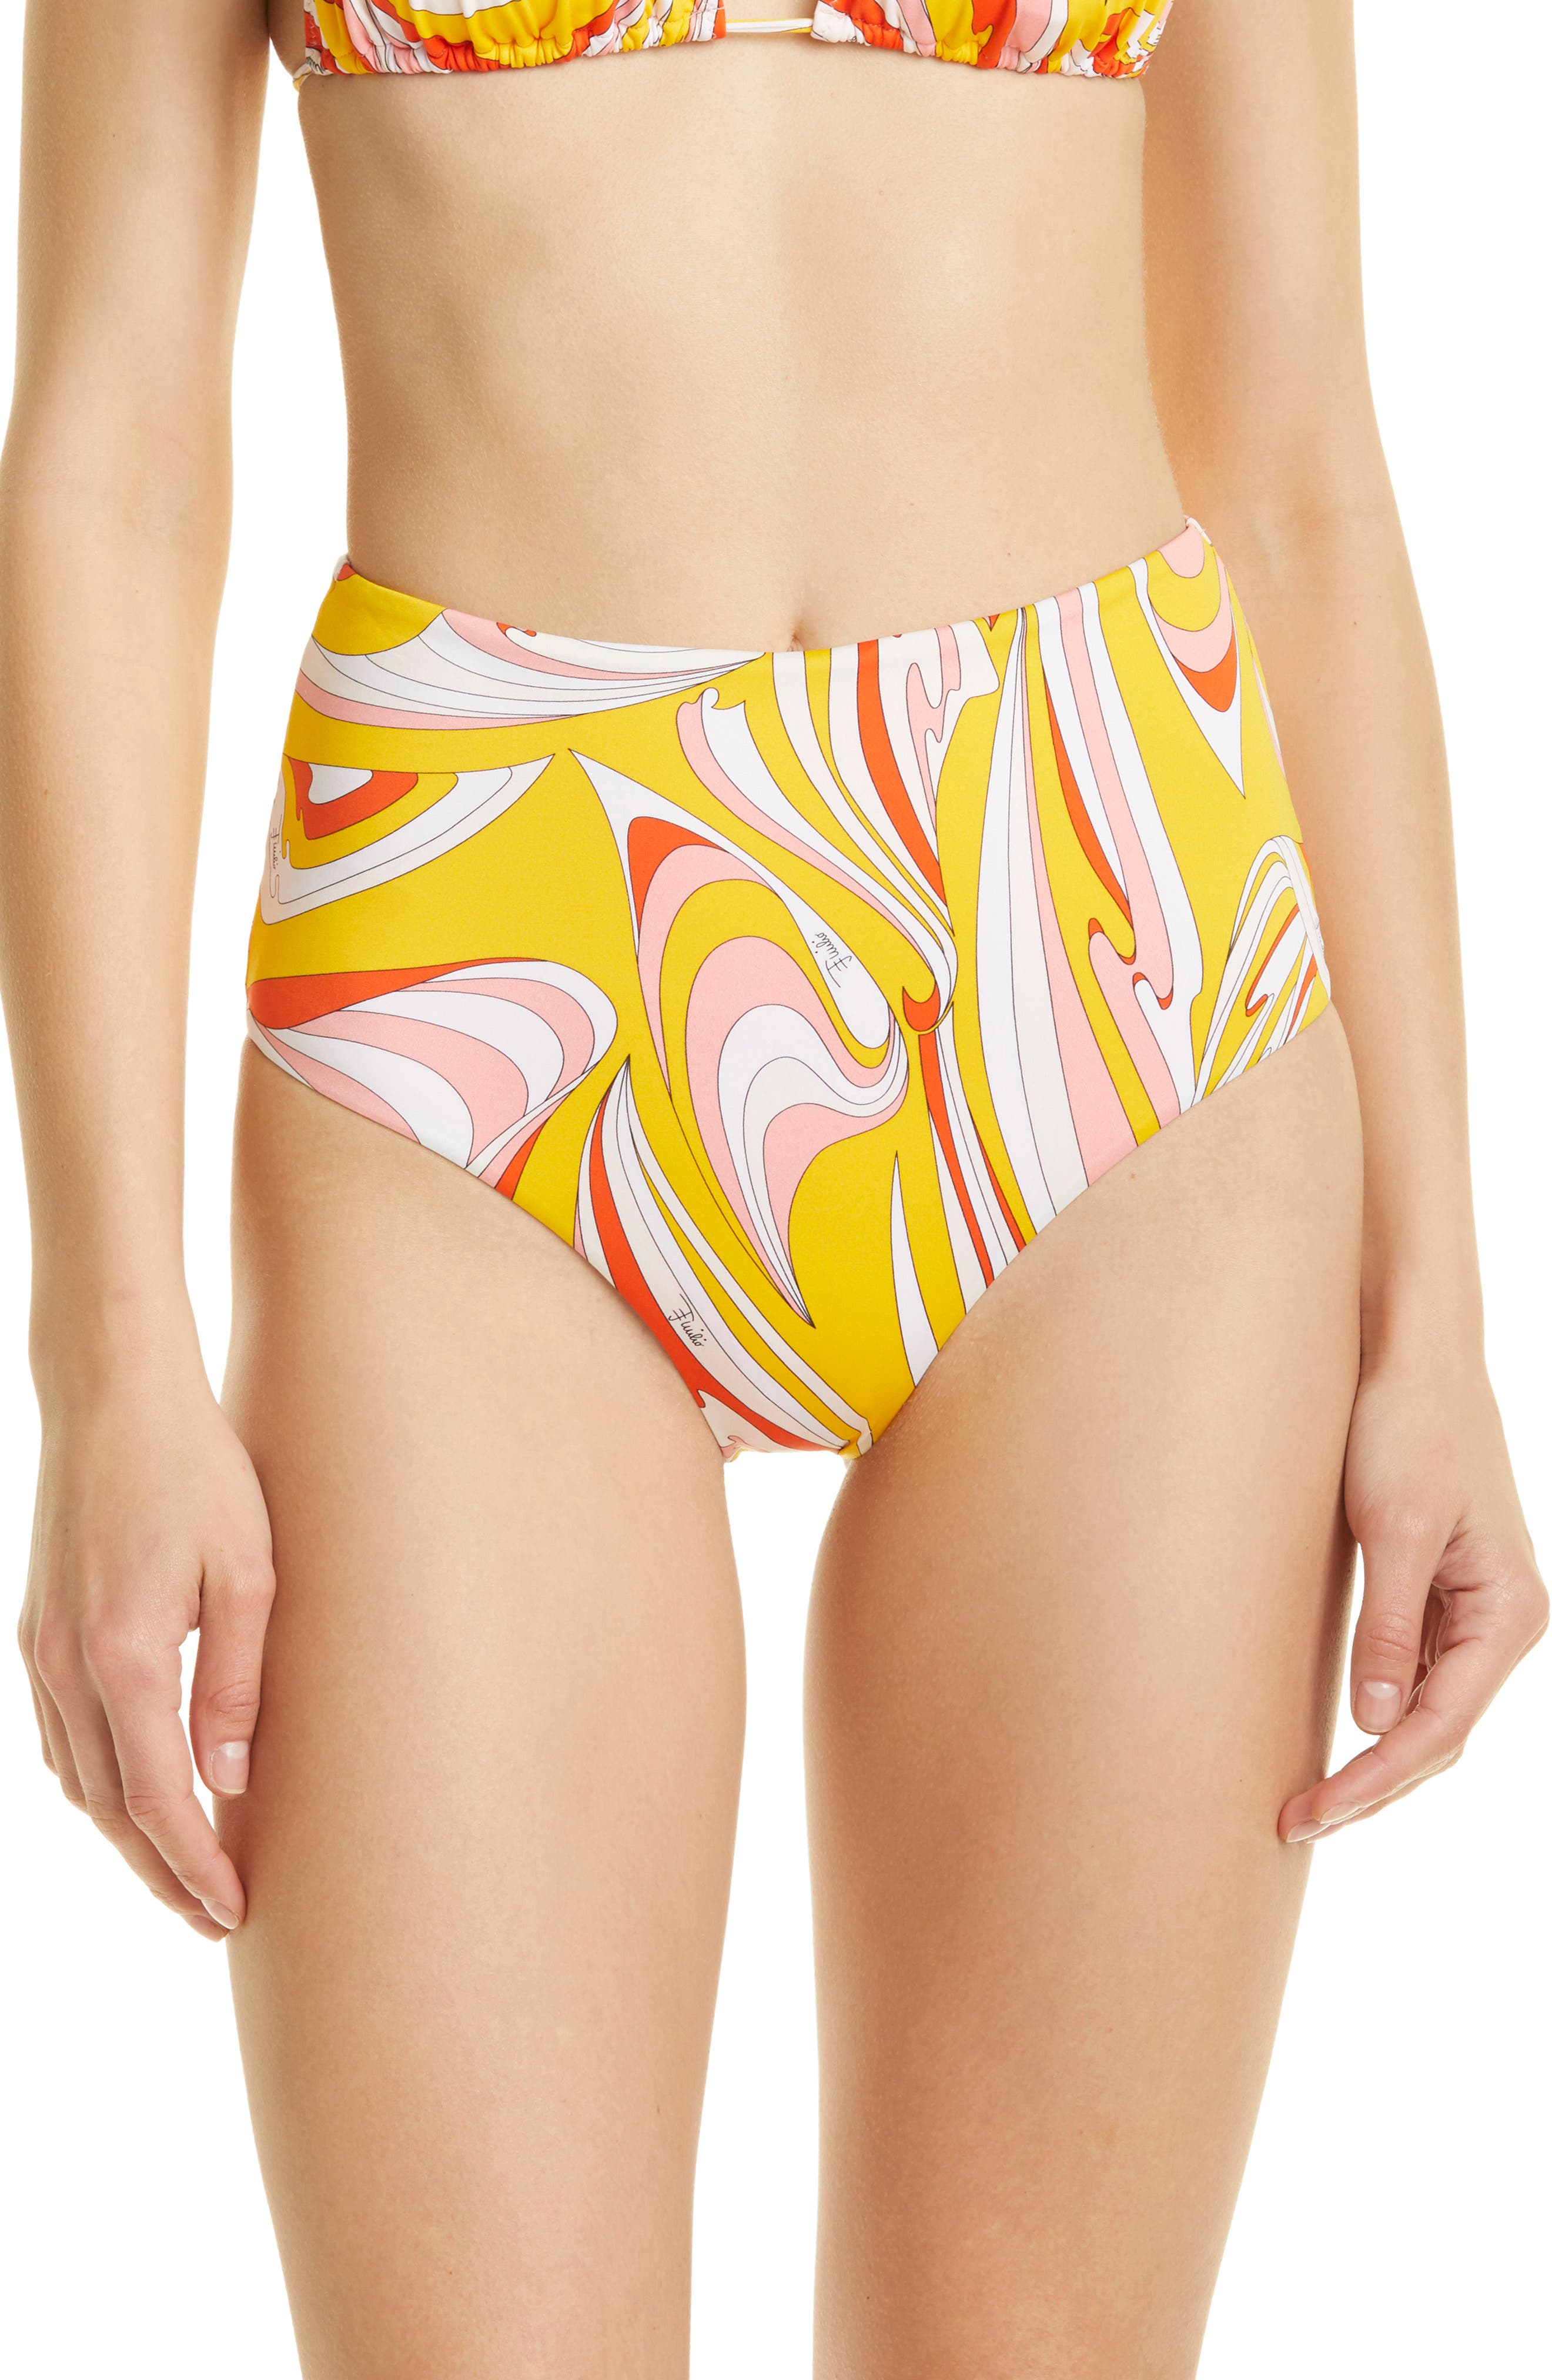 Emilio Pucci Vortici High Waist Bikini Bottoms in Giallo Arancio at Nordstrom, Size 6 Us